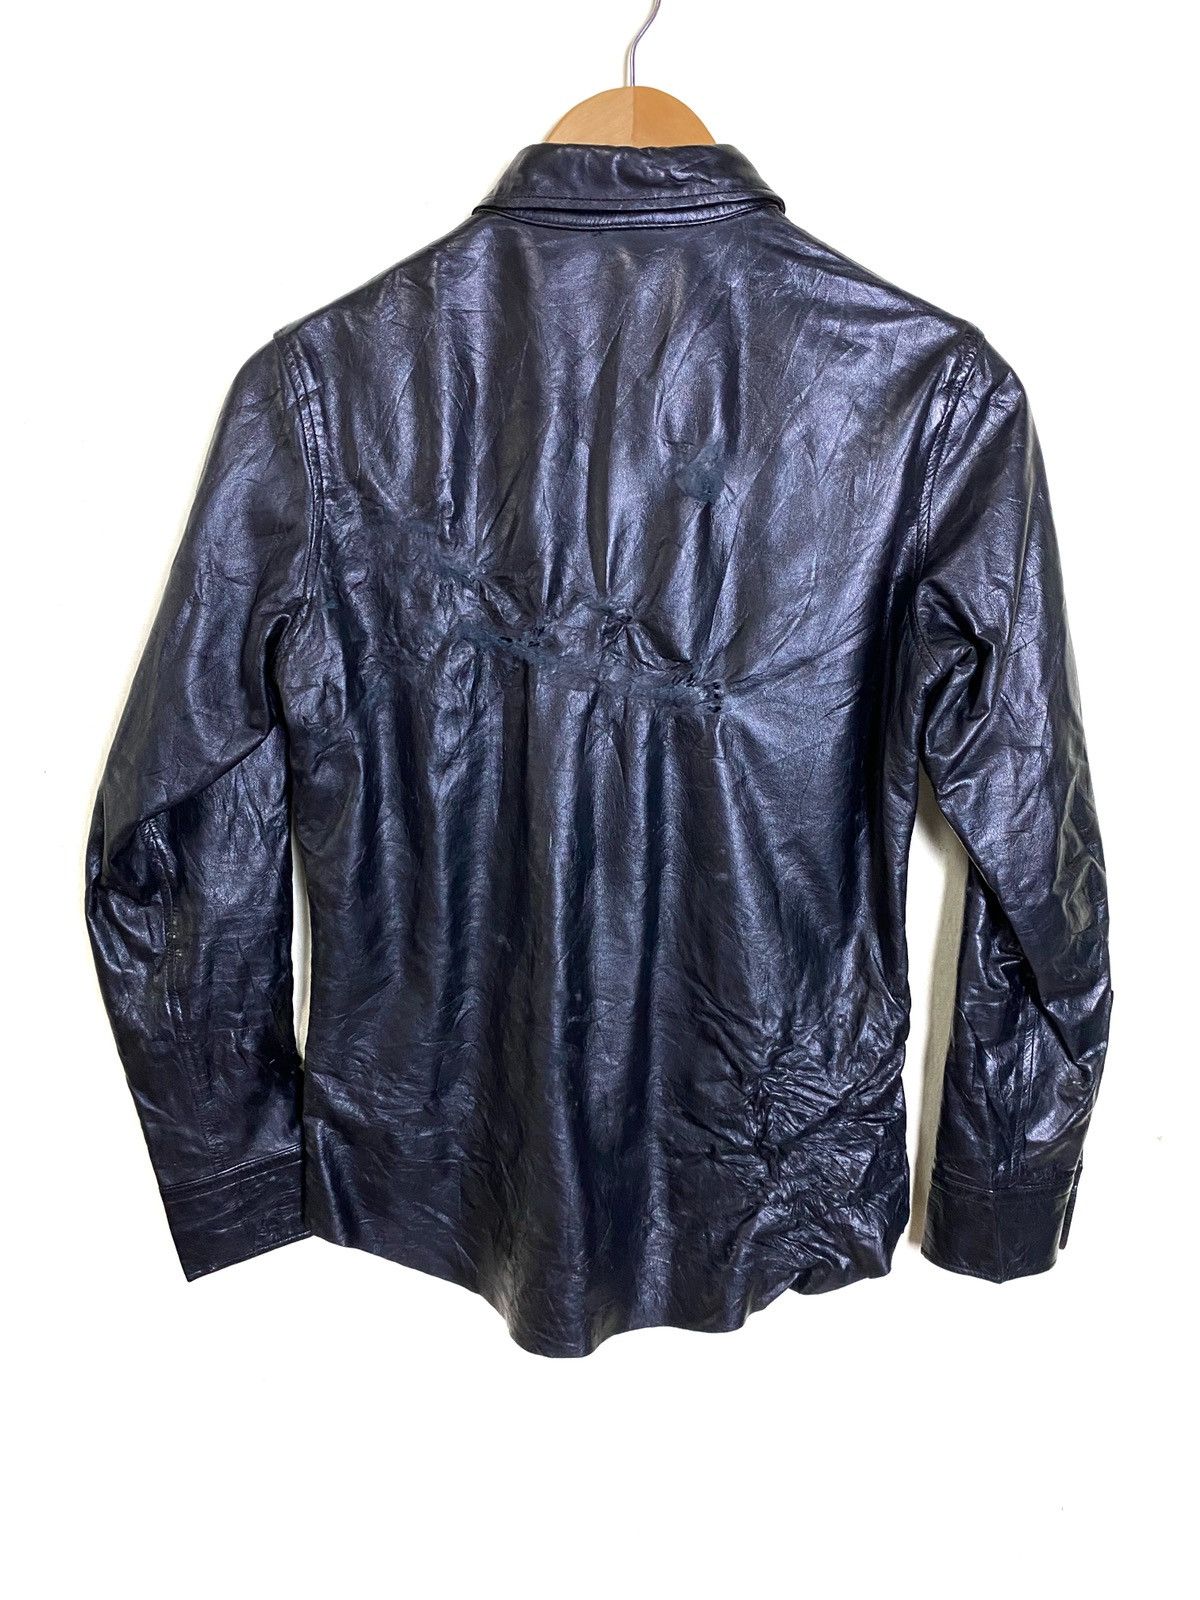 Vintage Y’s Yohji Yamamoto Leather Shirt - 8